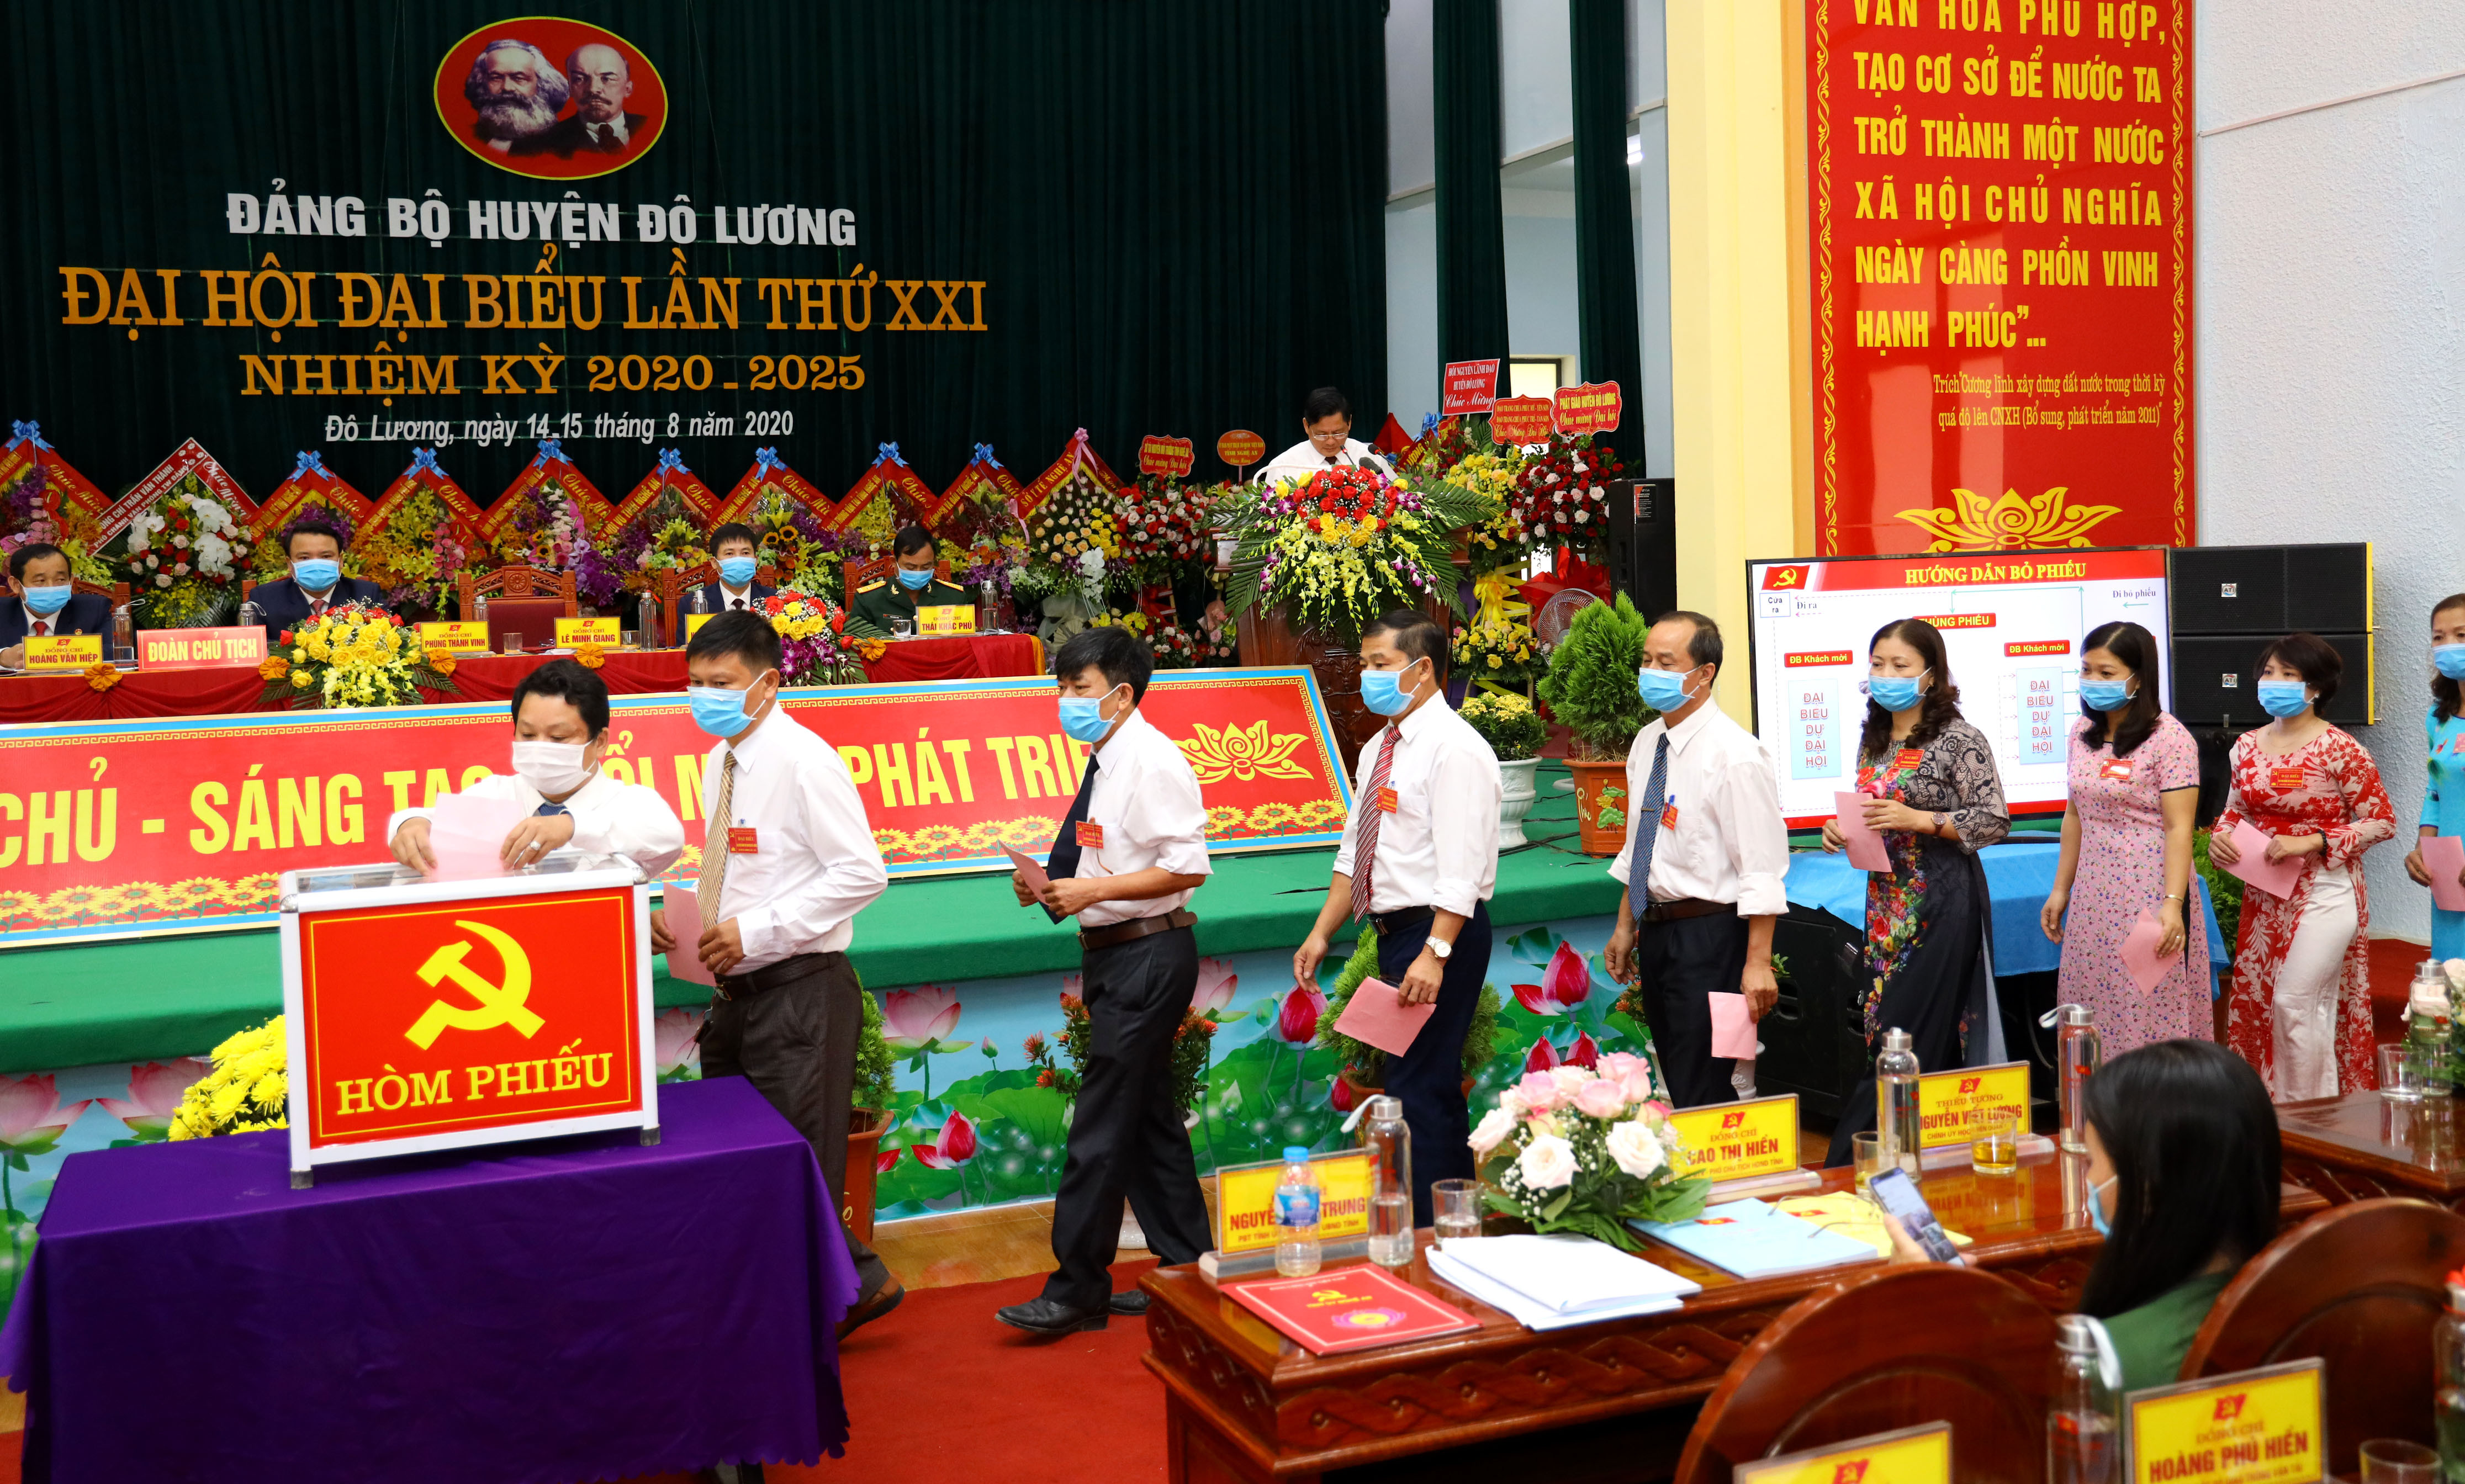 Đại biểu bầu Ban chấp hành Đảng bộ huyện Đô Lương, nhiệm kỳ 2020-2025. Ảnh Nguyên Nguyên